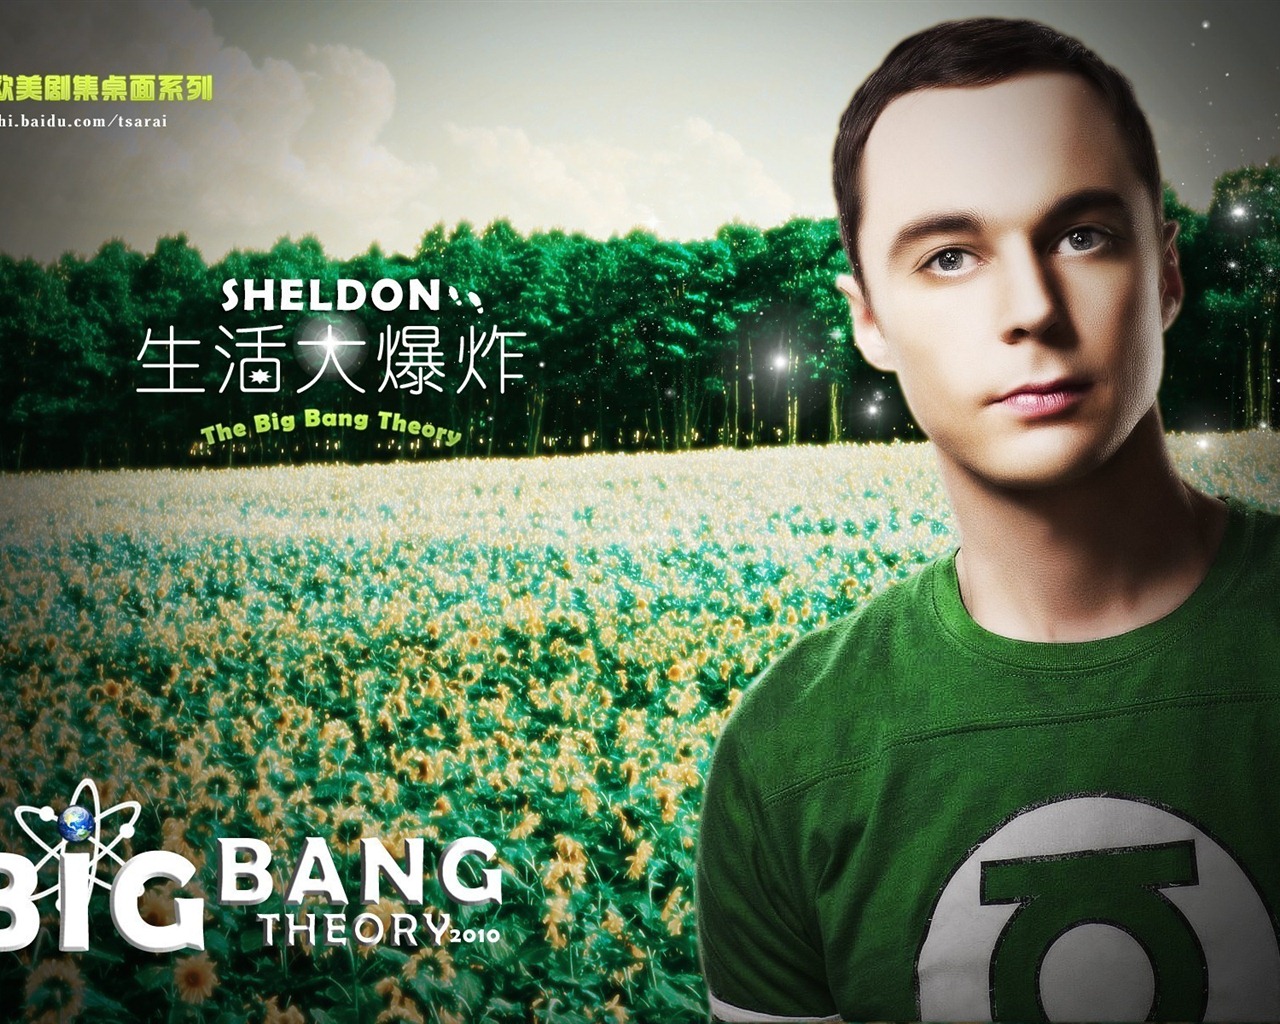 The Big Bang Theory 生活大爆炸電視劇高清壁紙 #16 - 1280x1024